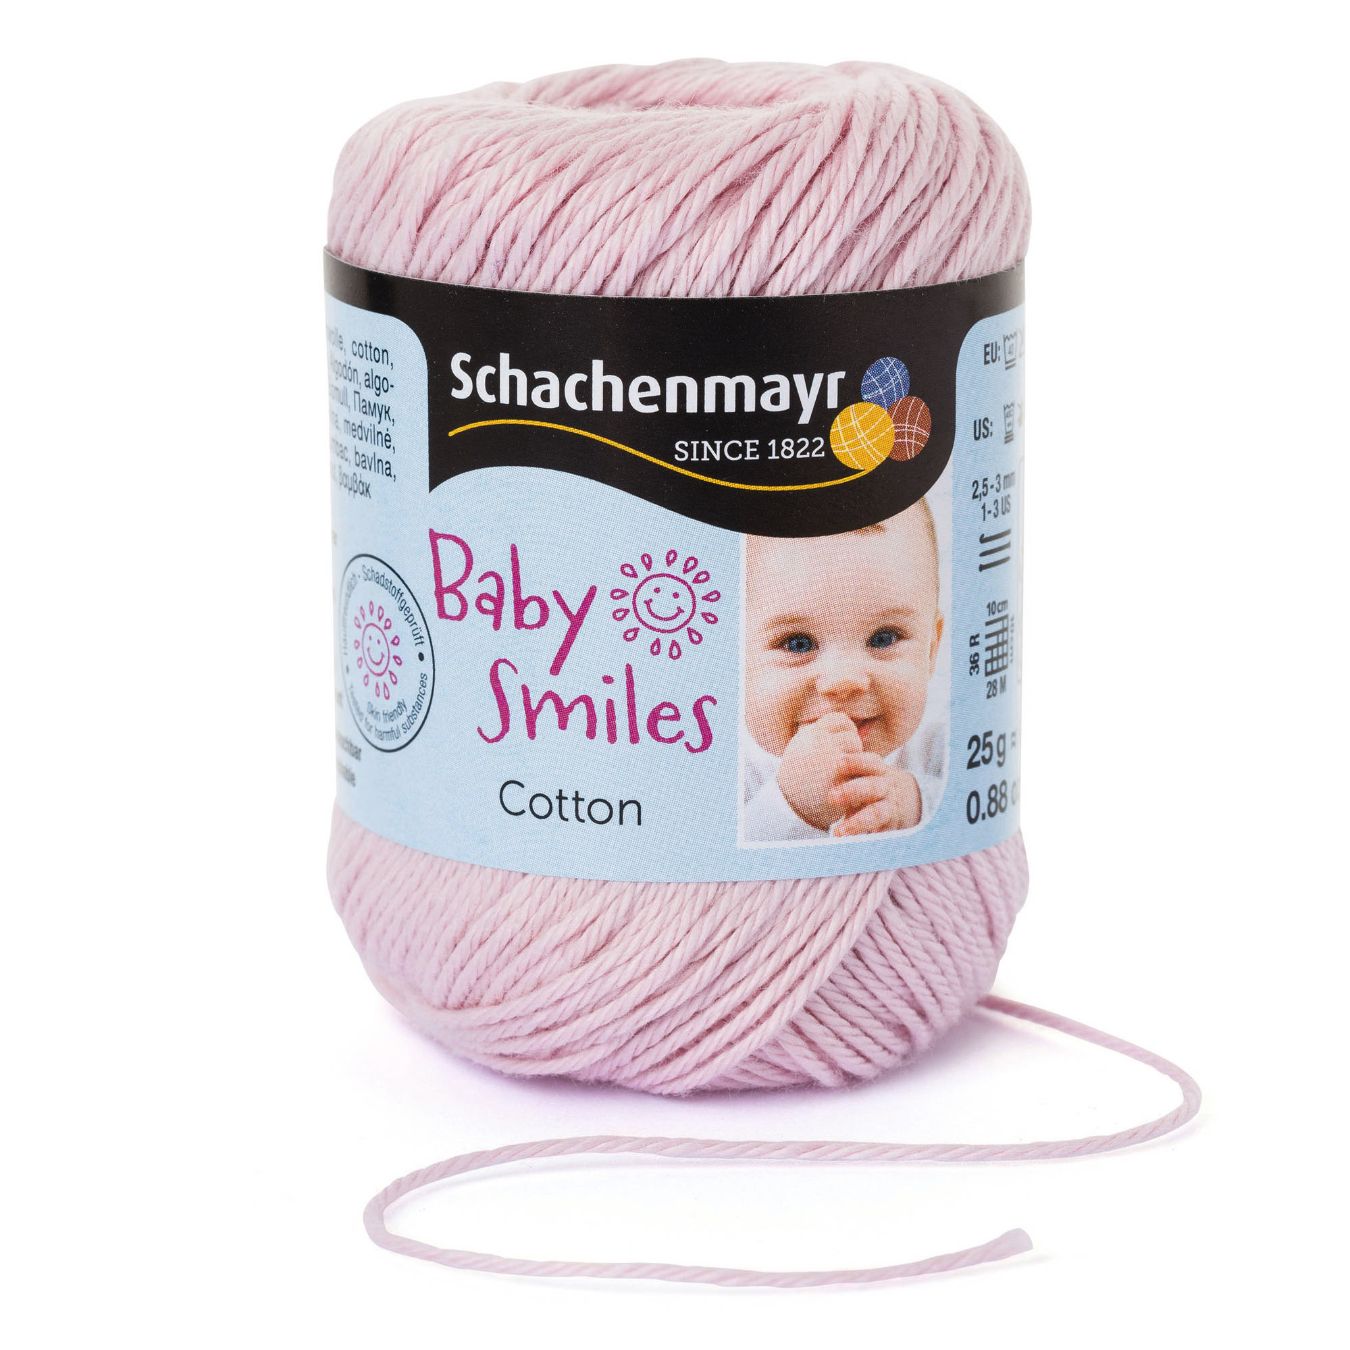 BABY SMILES COTTON 25g/92m  100% Cotton